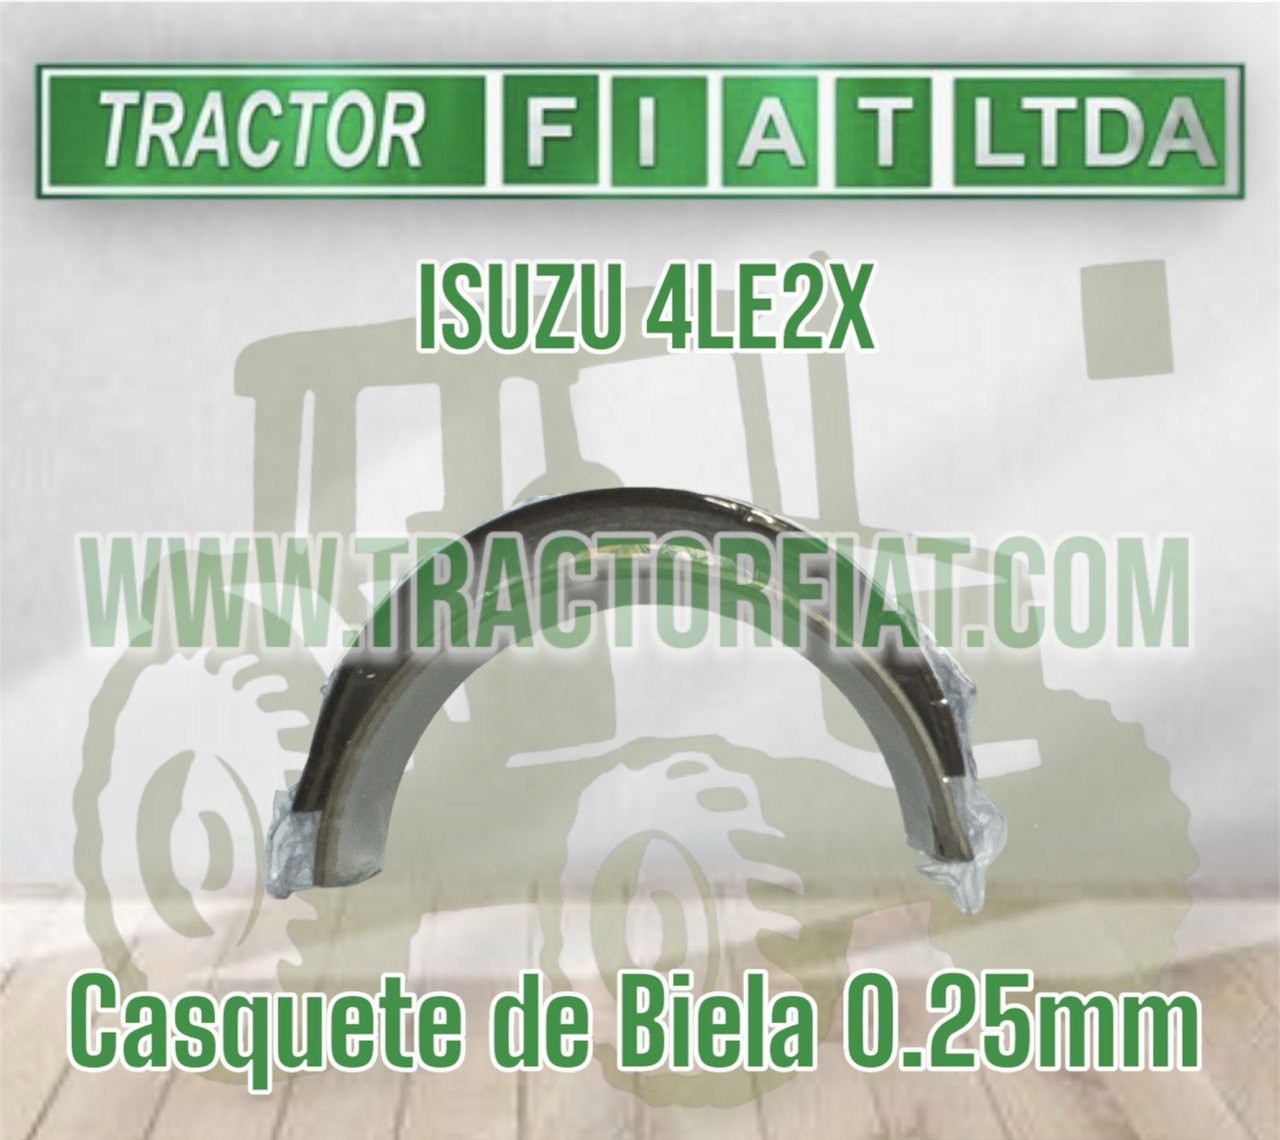 CASQUETE BIELA 0.25 MM - MOTOR ISUZU 4LE2X